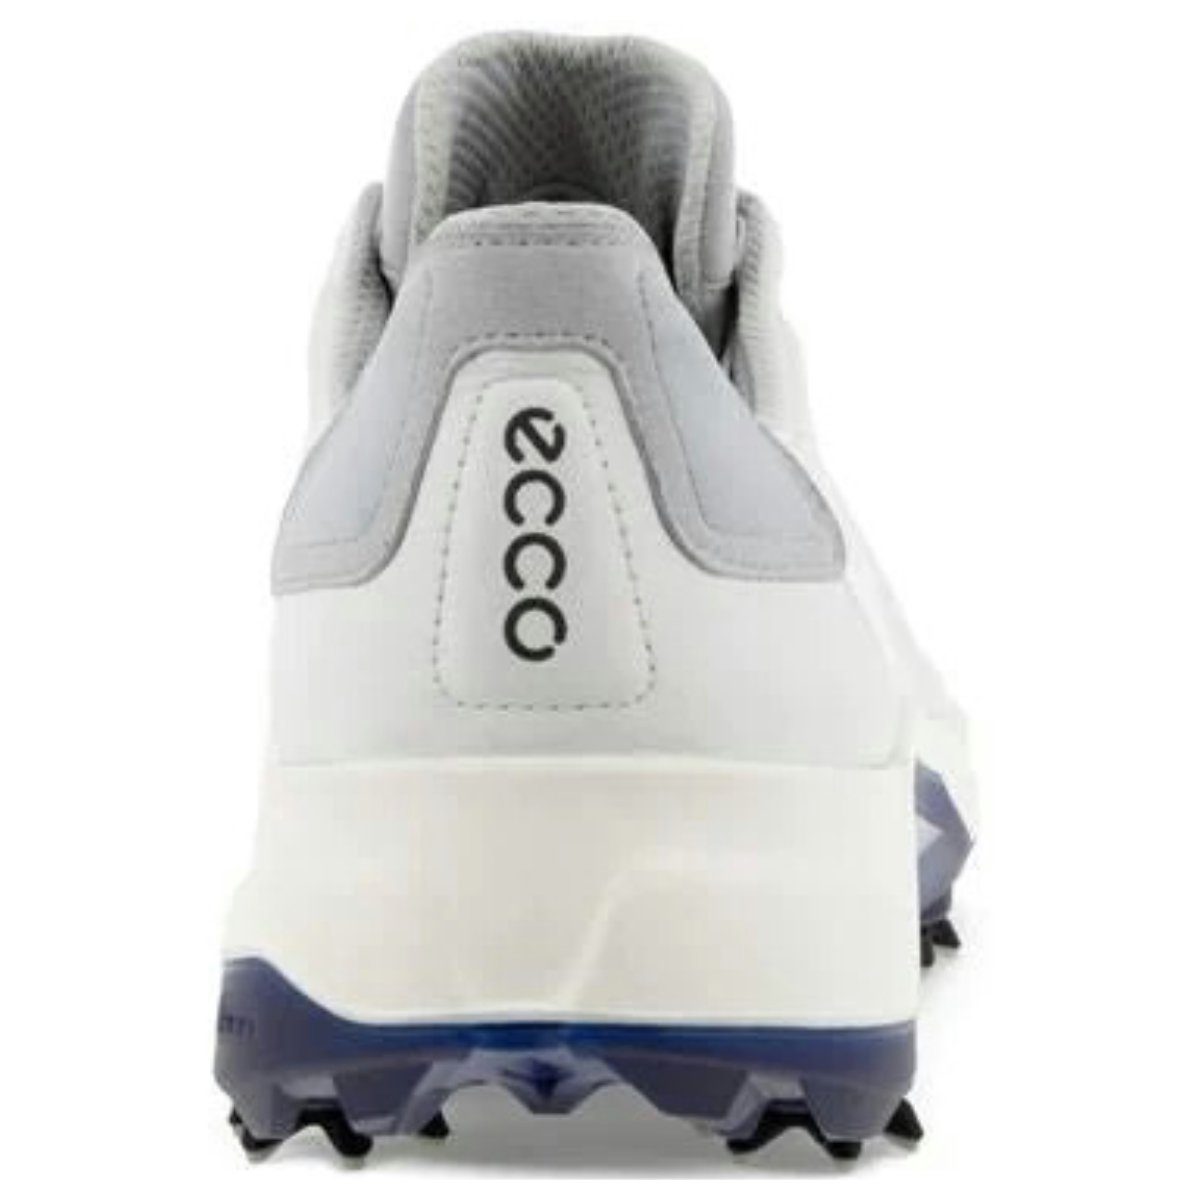 Golfschuh G5 Ecco Verbesserte X-TENSA Ecco Herren Depths Biom INVISIBLE Stabilität White/Blue durch TECHNOLOGIE